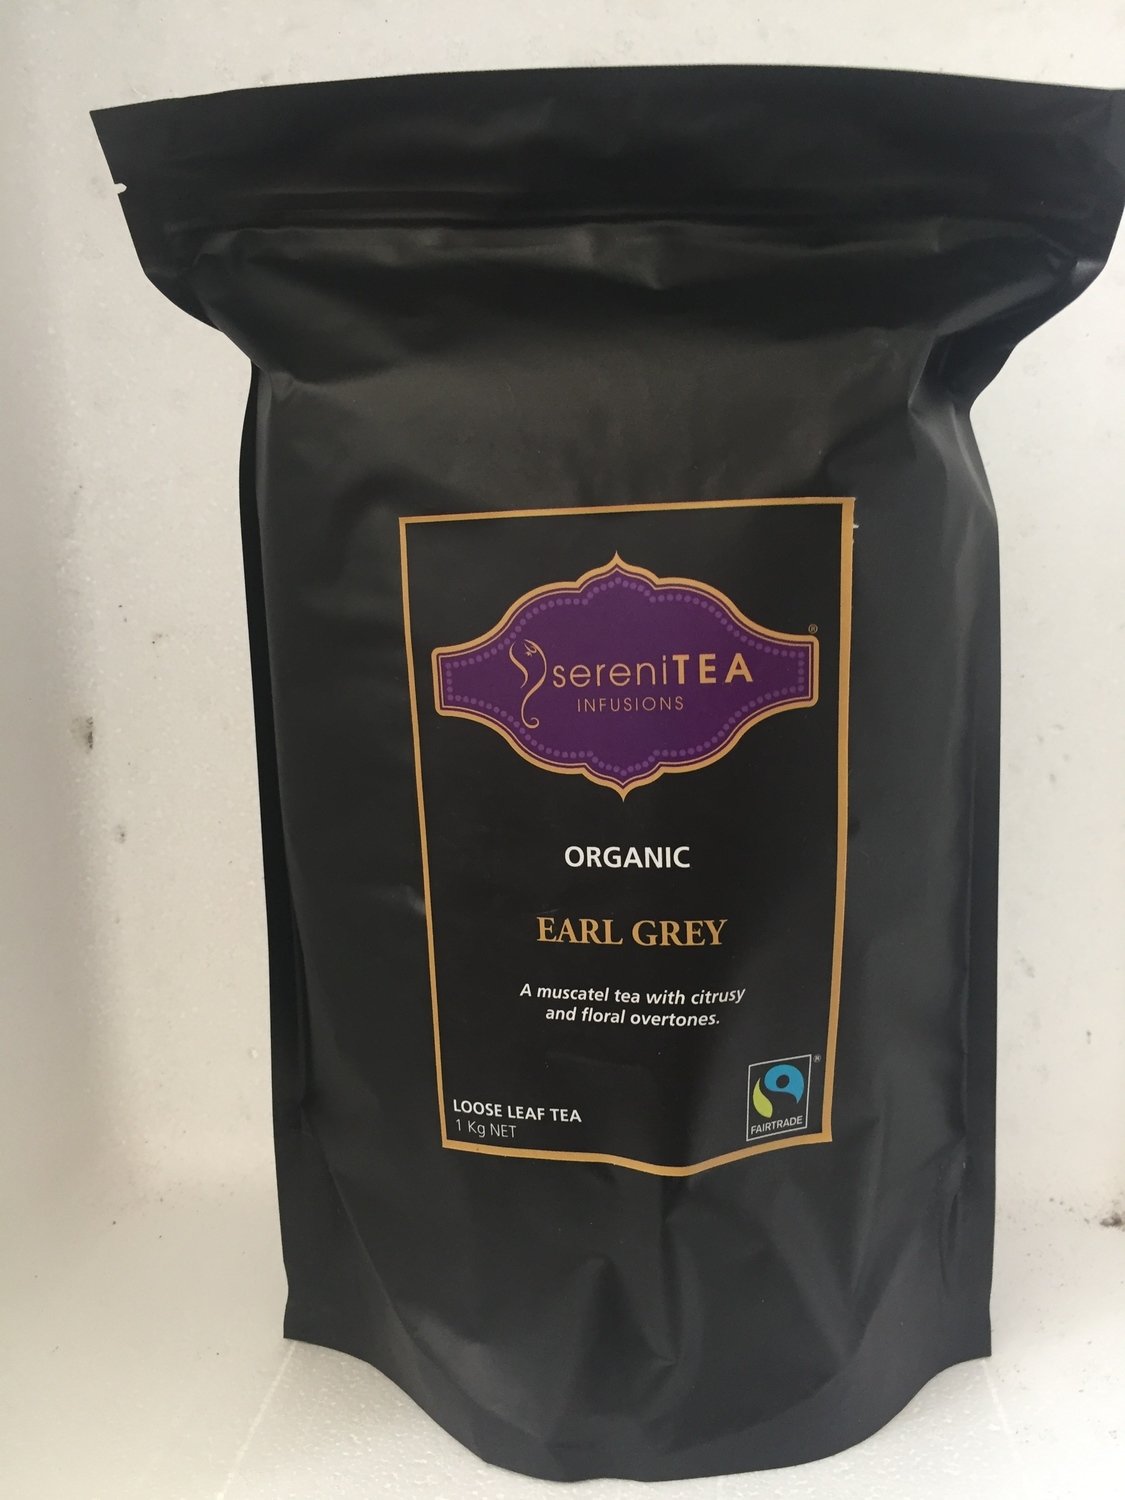 SereniTEA Earl Grey Tea 1kg loose leaf